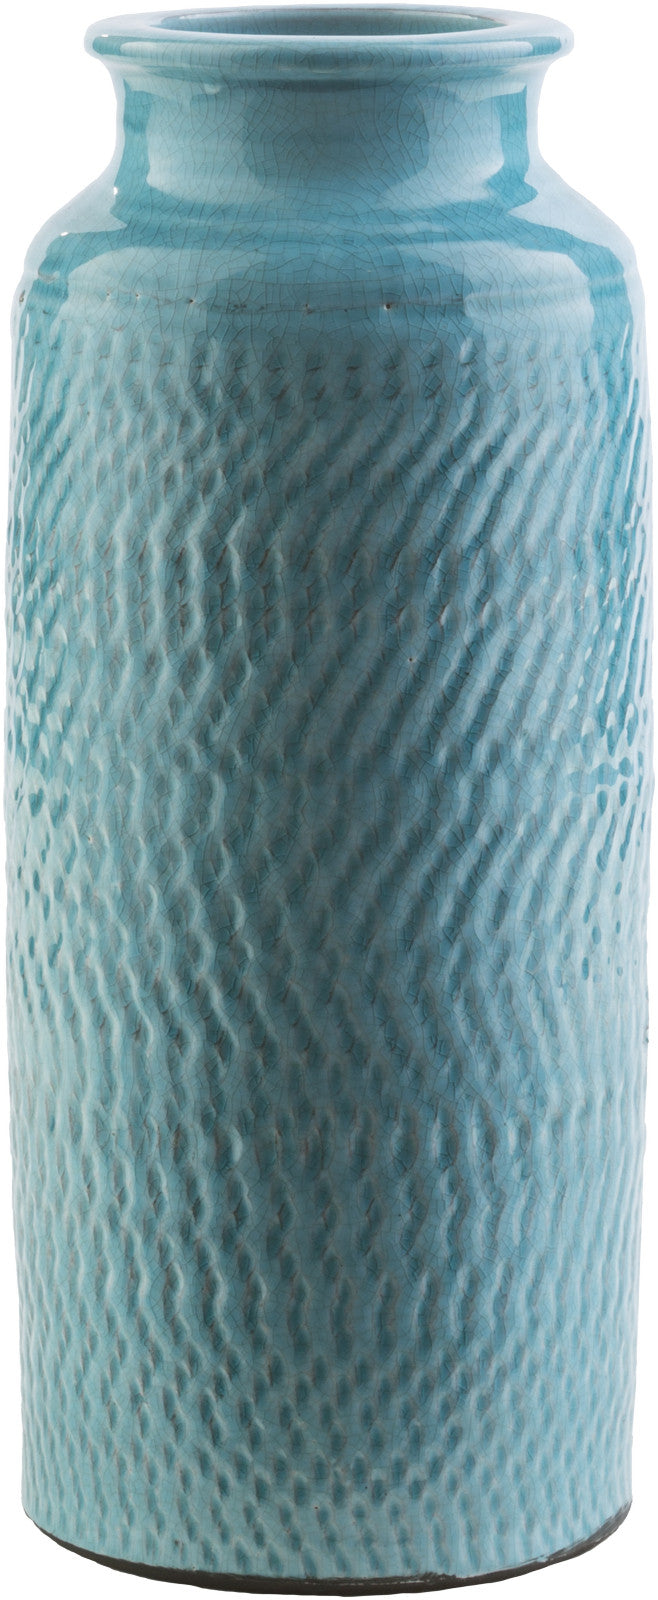 Surya Zuniga ZNG-731 Vase Medium 5.71 X 5.71 X 13.98 inches